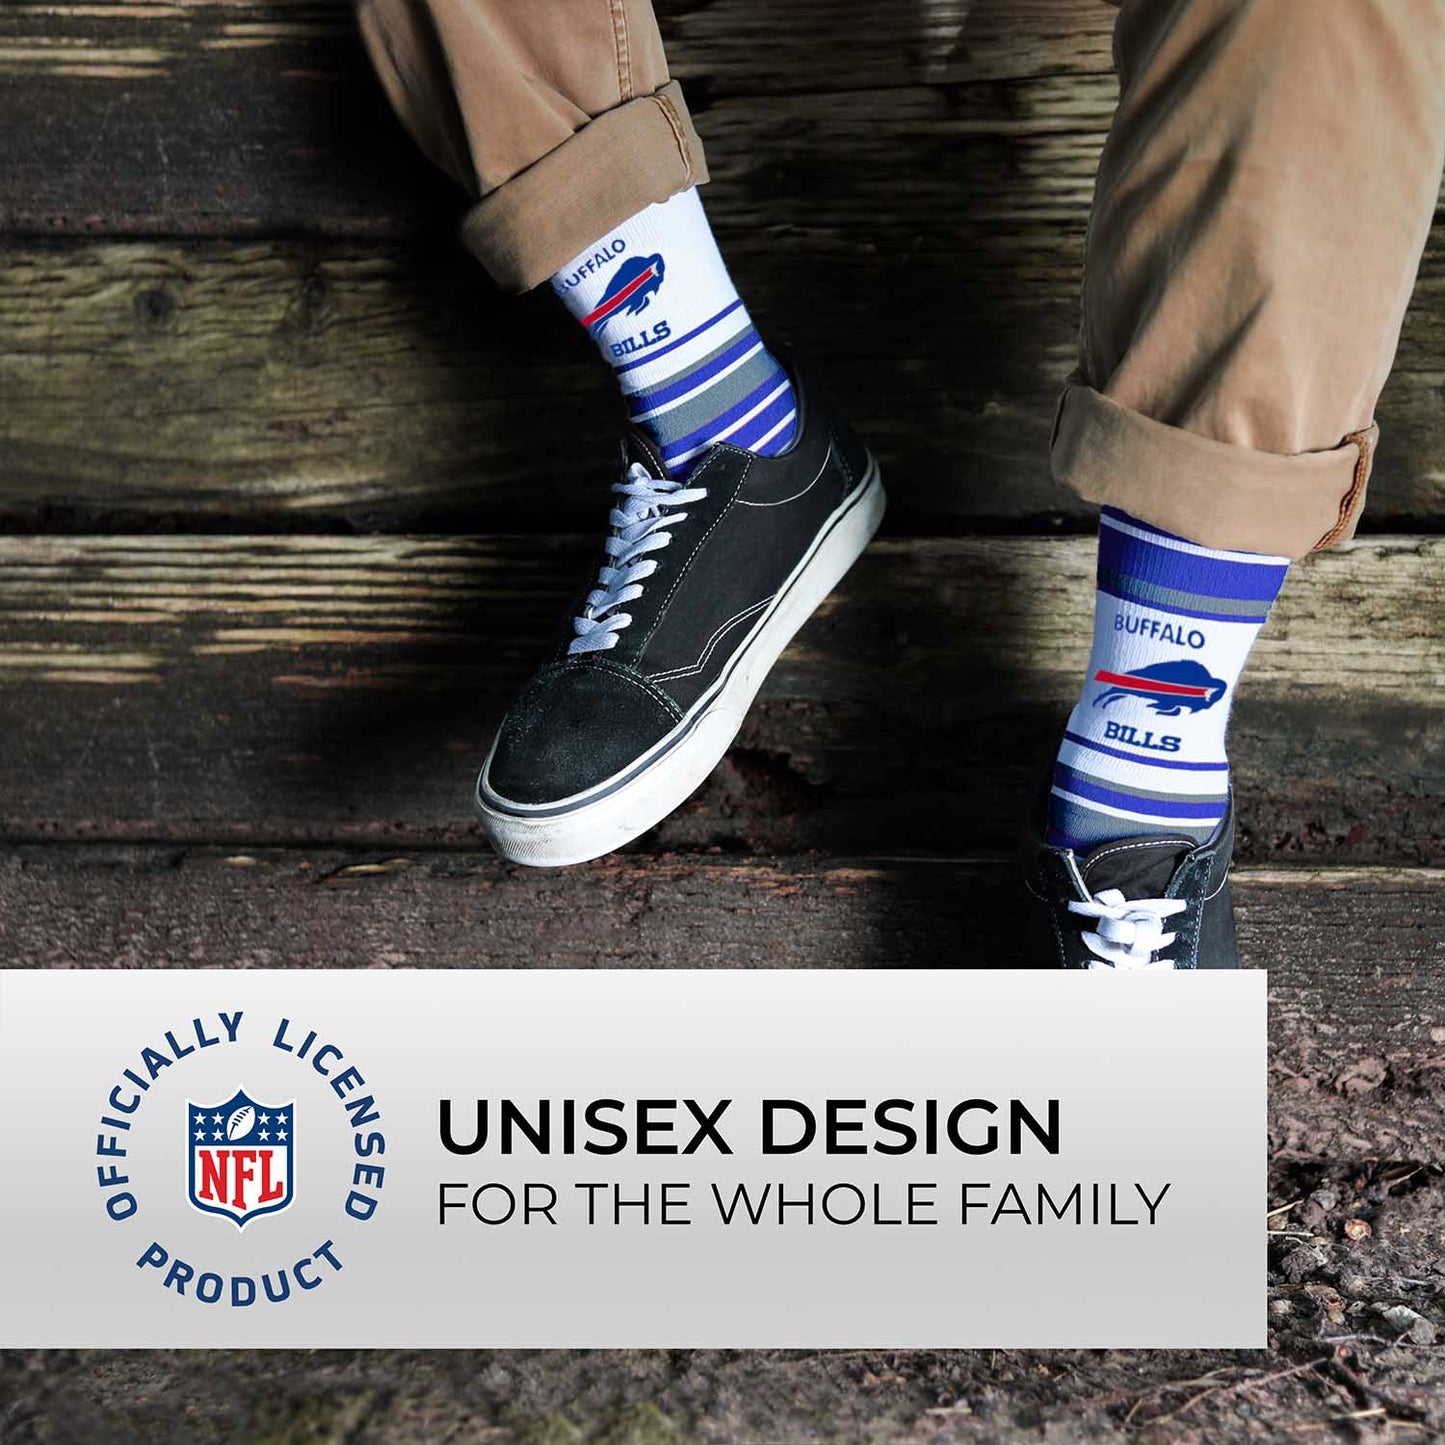 Buffalo Bills NFL Adult Striped Dress Socks - Blue